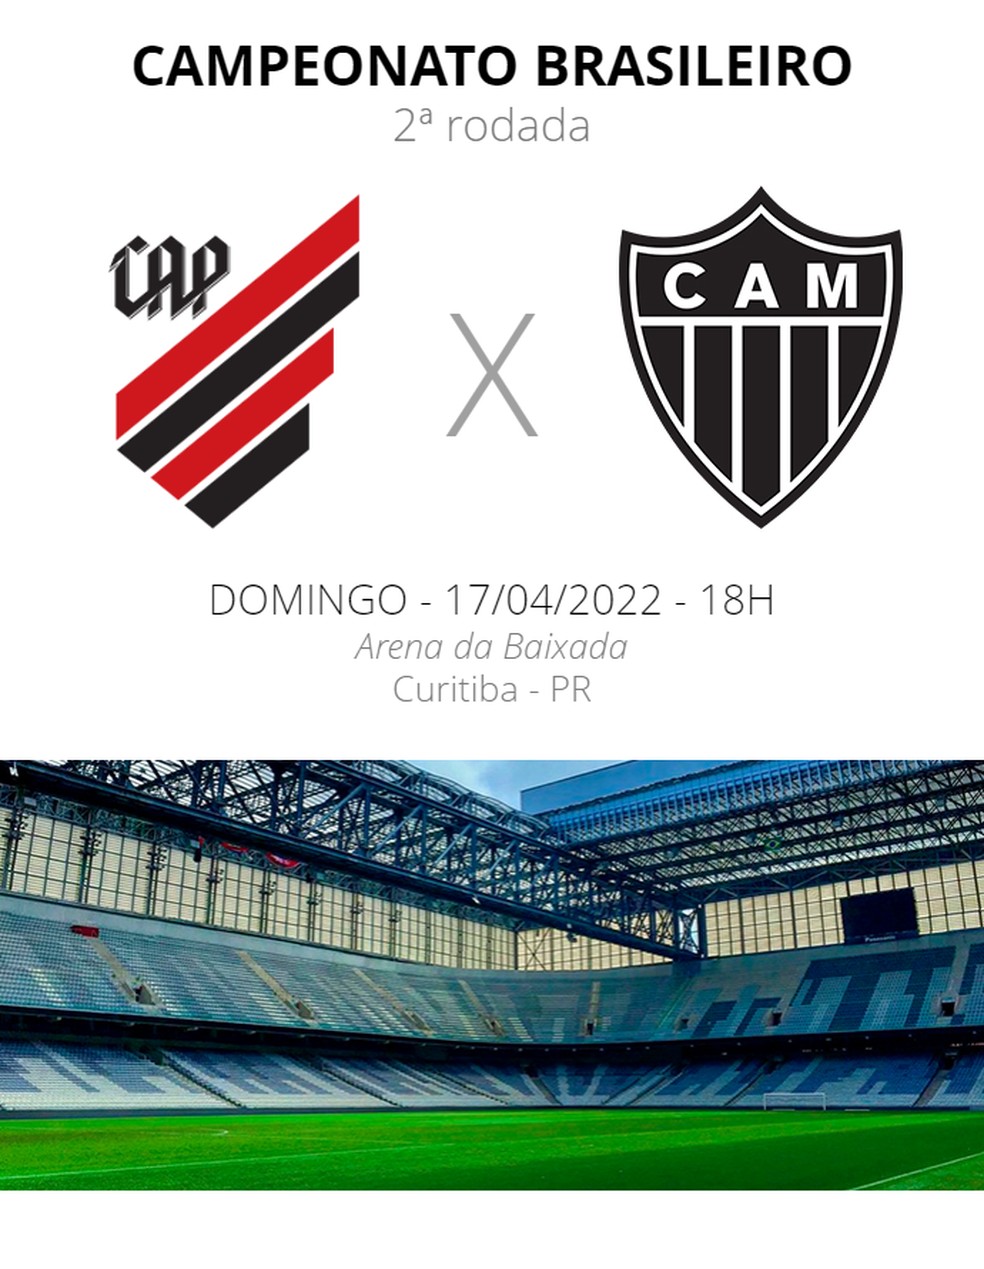 Onde assistir o jogo do Galo e Atlético paranaense 2022?